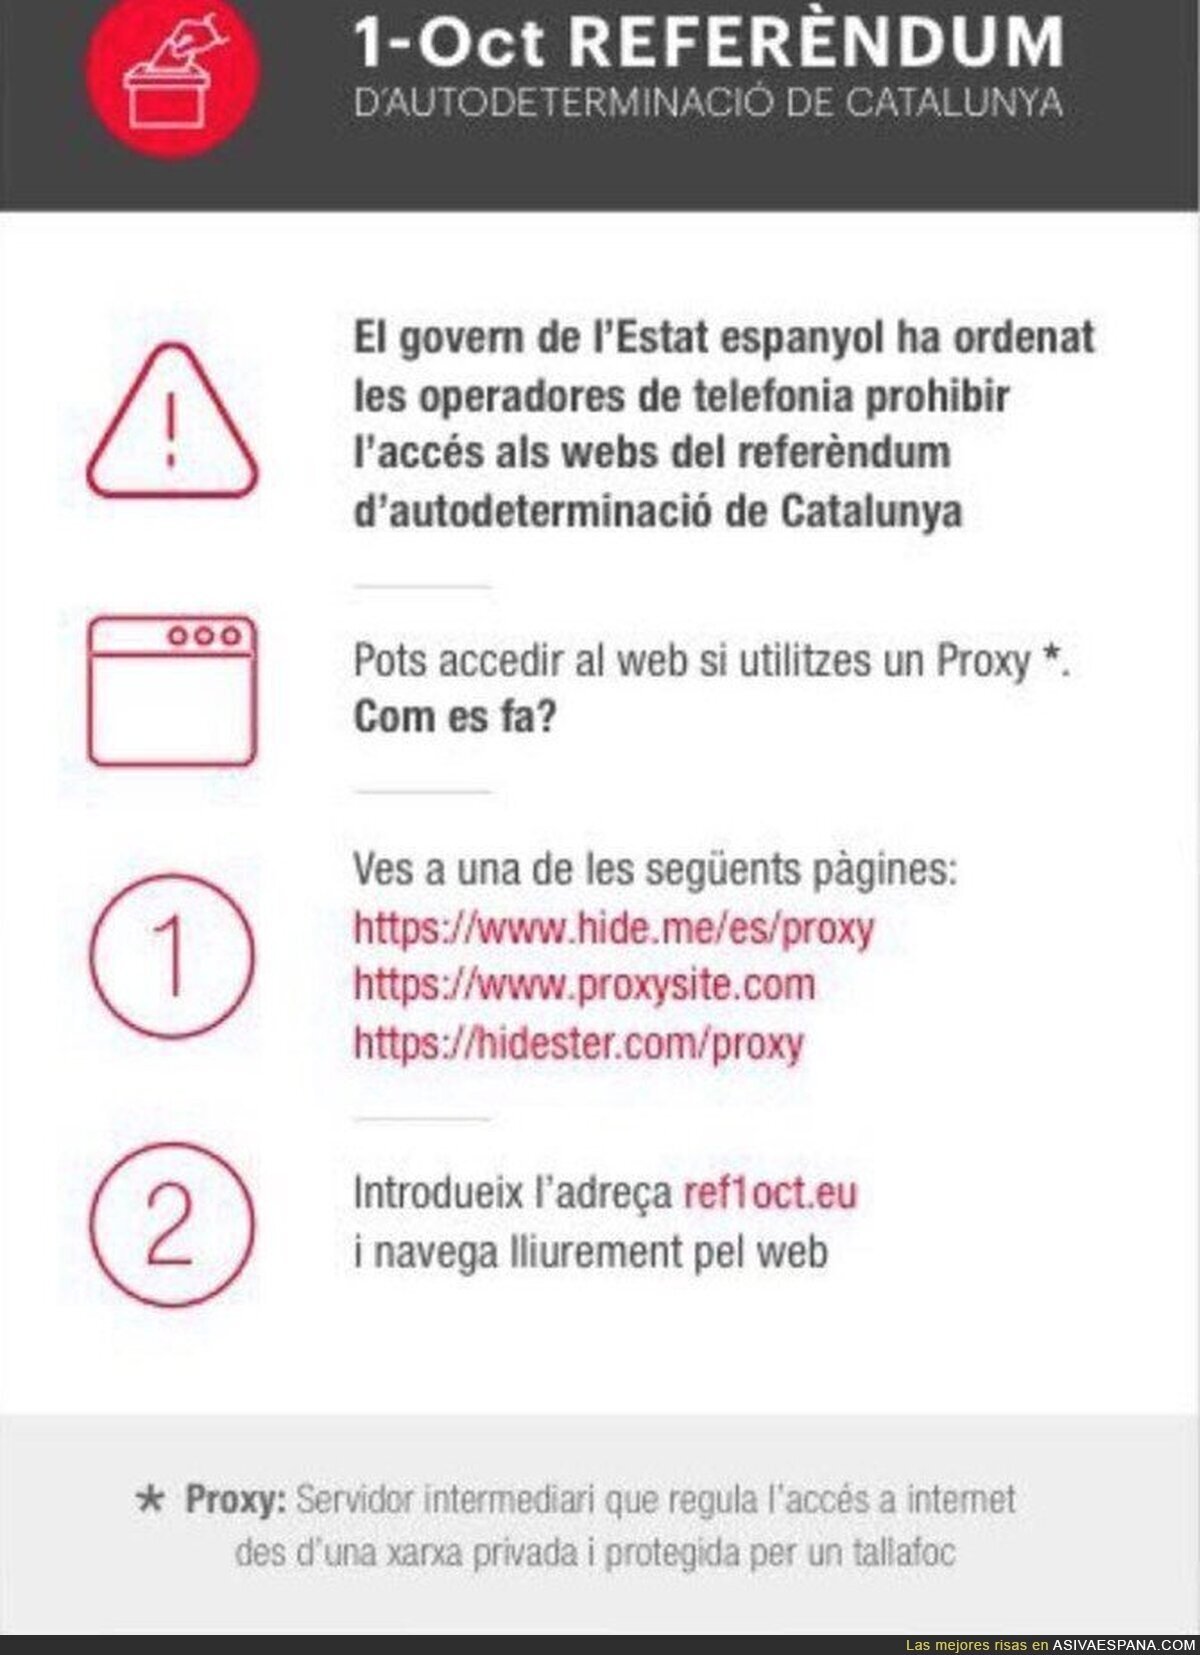 Las compañías telefónicas españolas censuran el acceso a la web del Referéndum